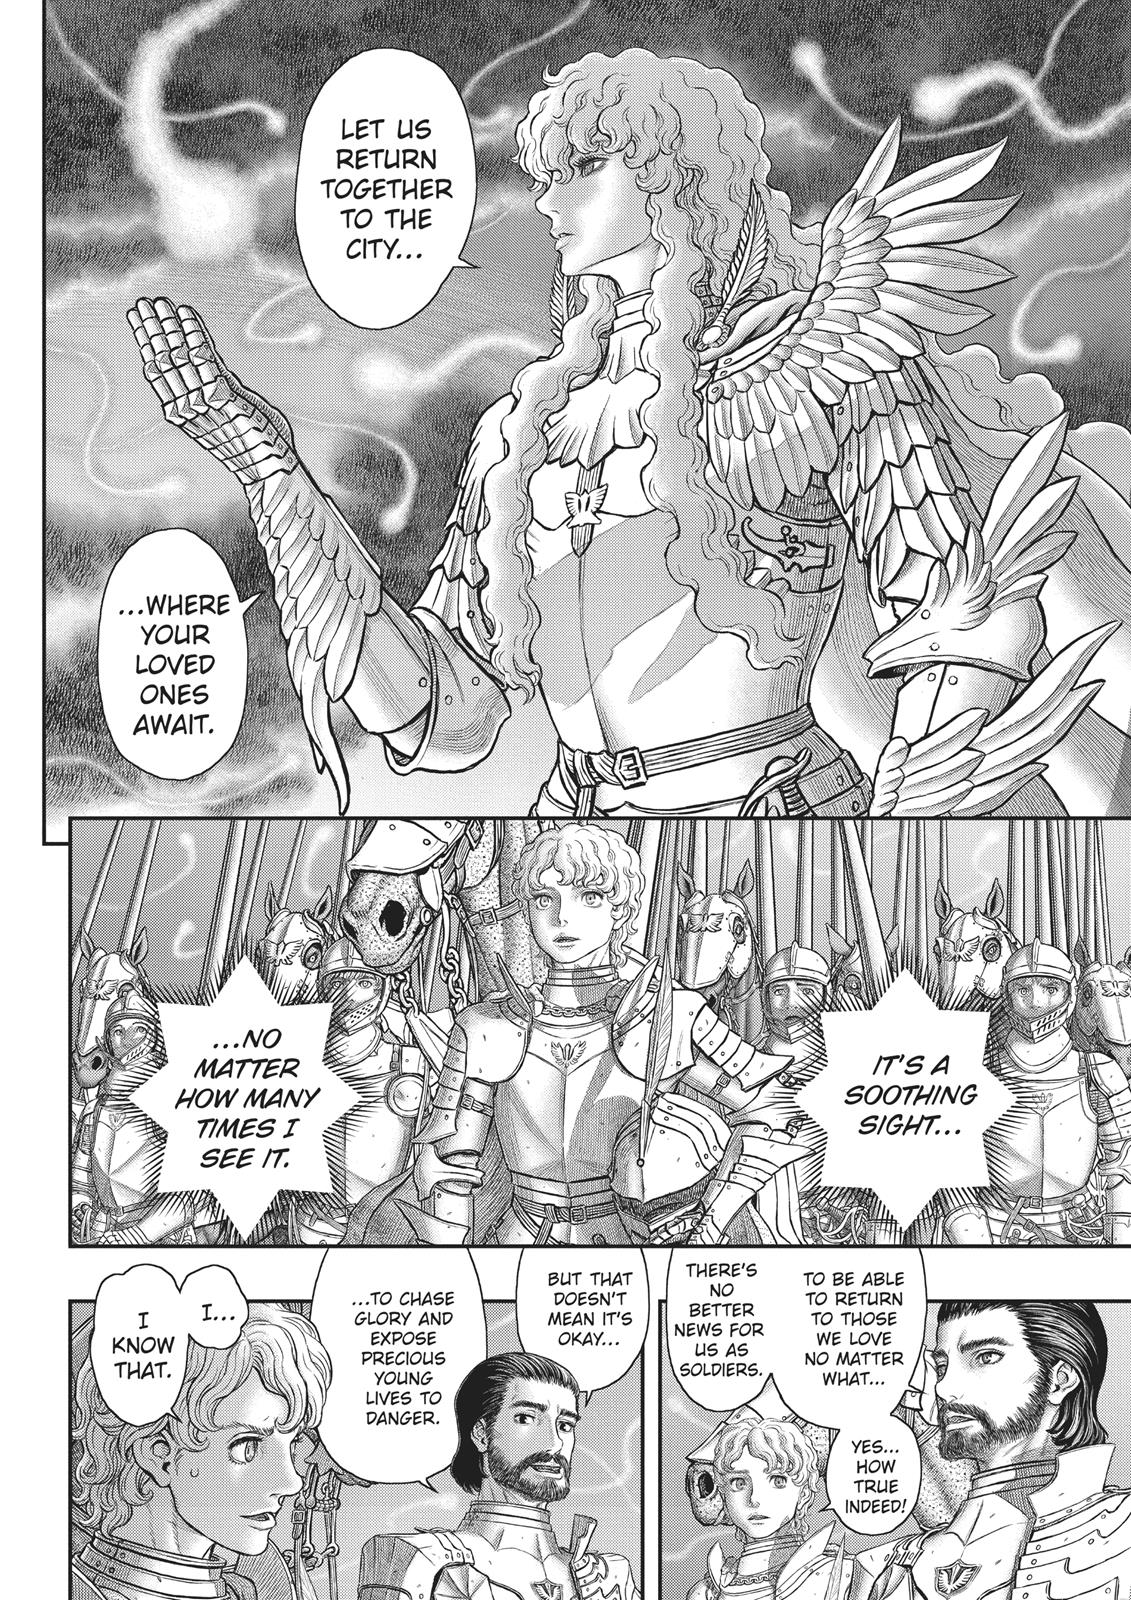 Berserk Manga Chapter 357 image 06